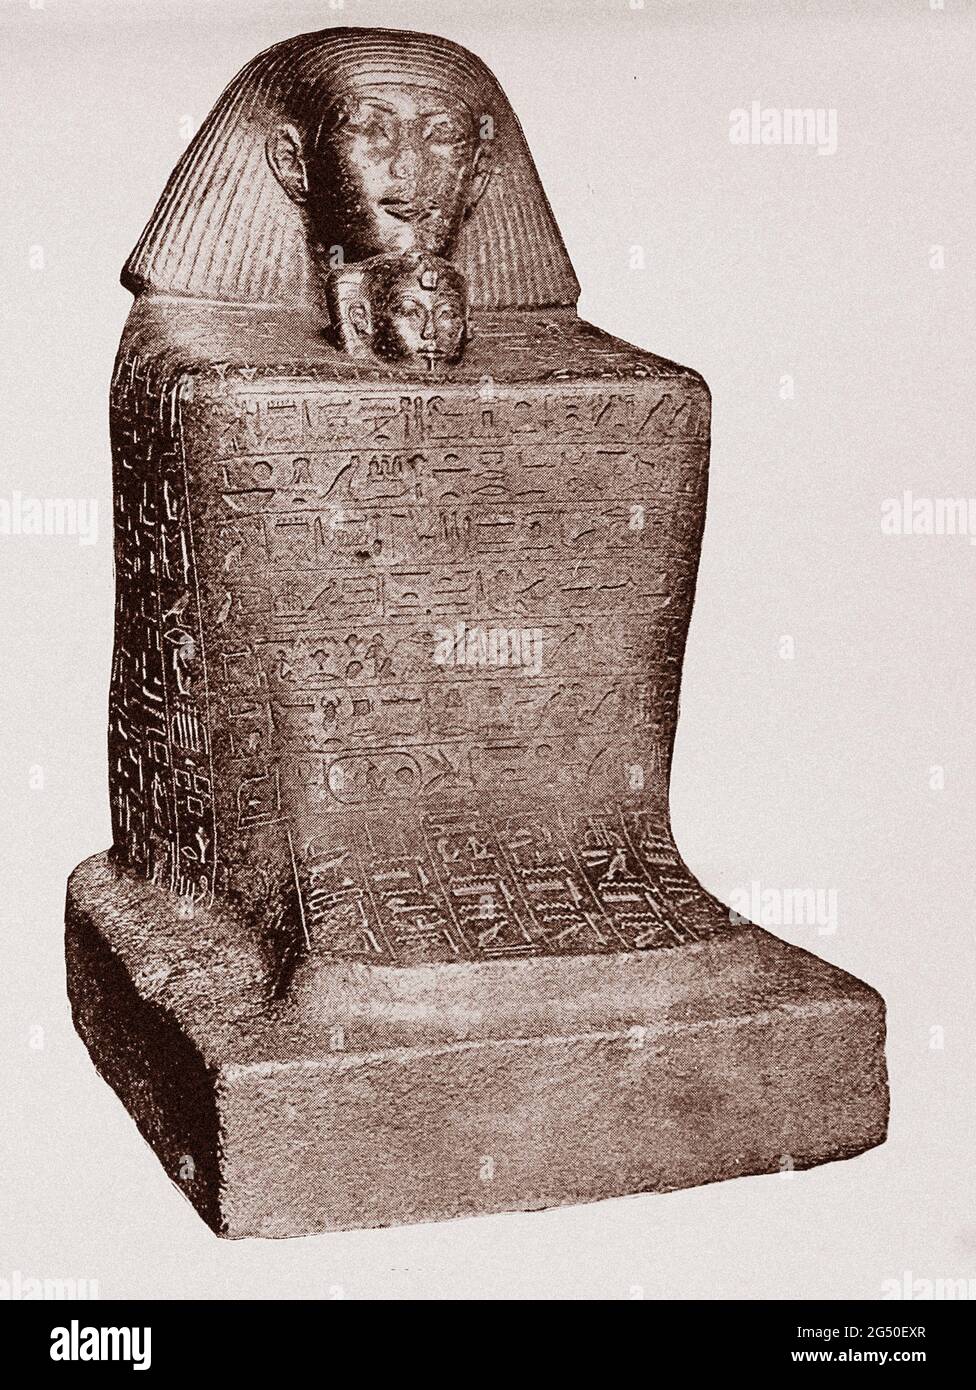 Égypte ancienne. L'Empire. Statue assise de Senmut, le favori de Hatshepsut. 1912 il tient la fille naissante de la reine, Nefrure, entre son kne Banque D'Images